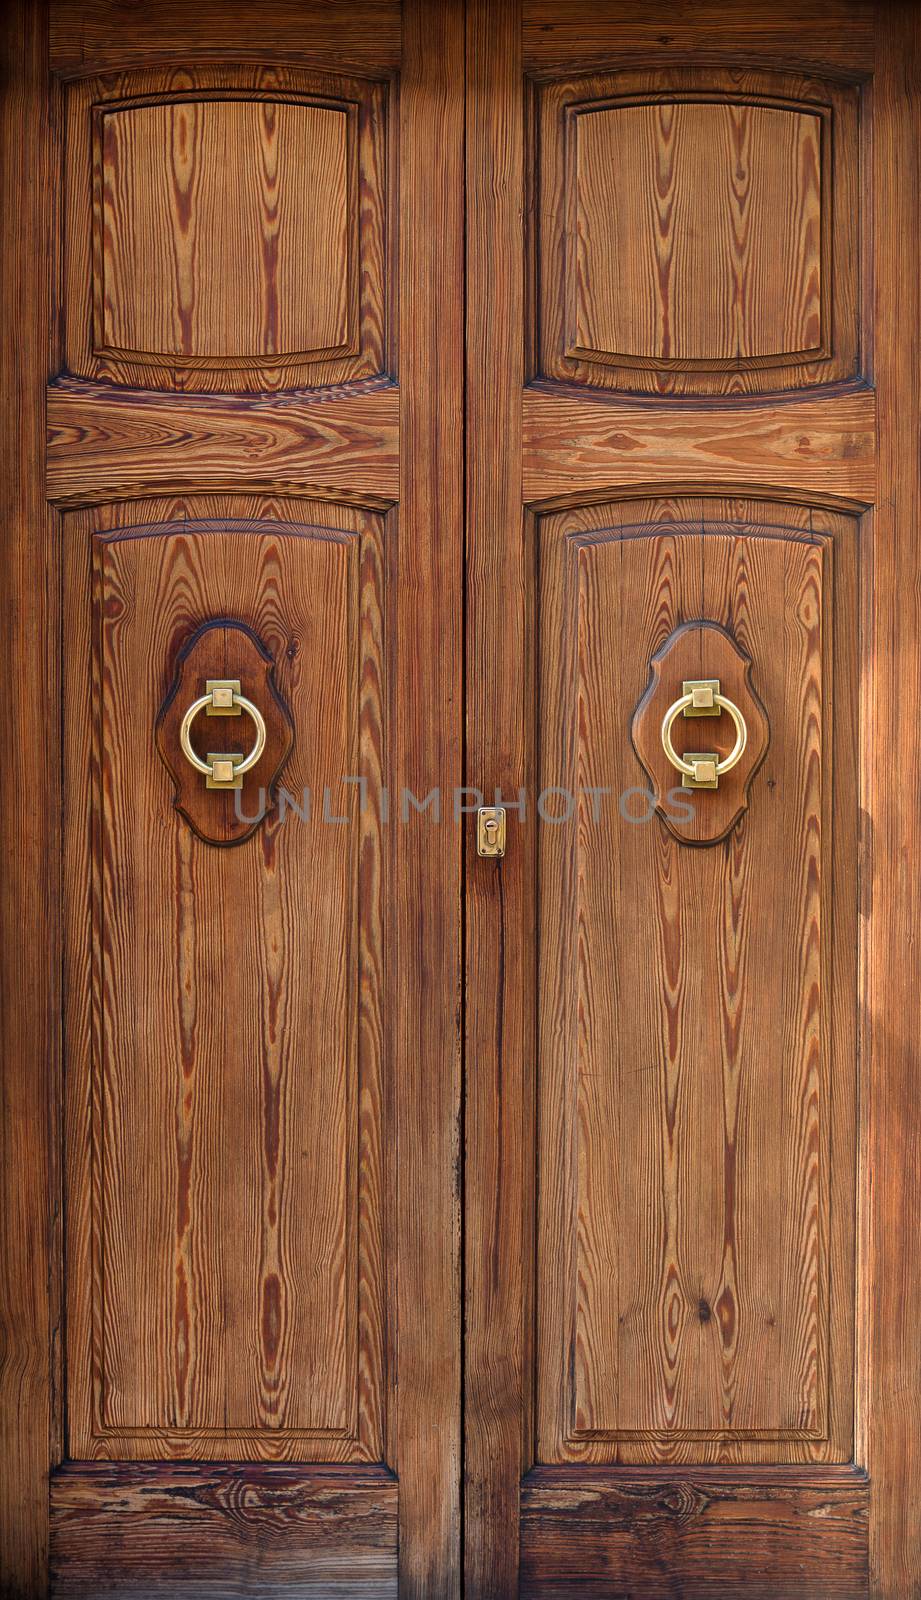 Close-up view of antique wooden door.